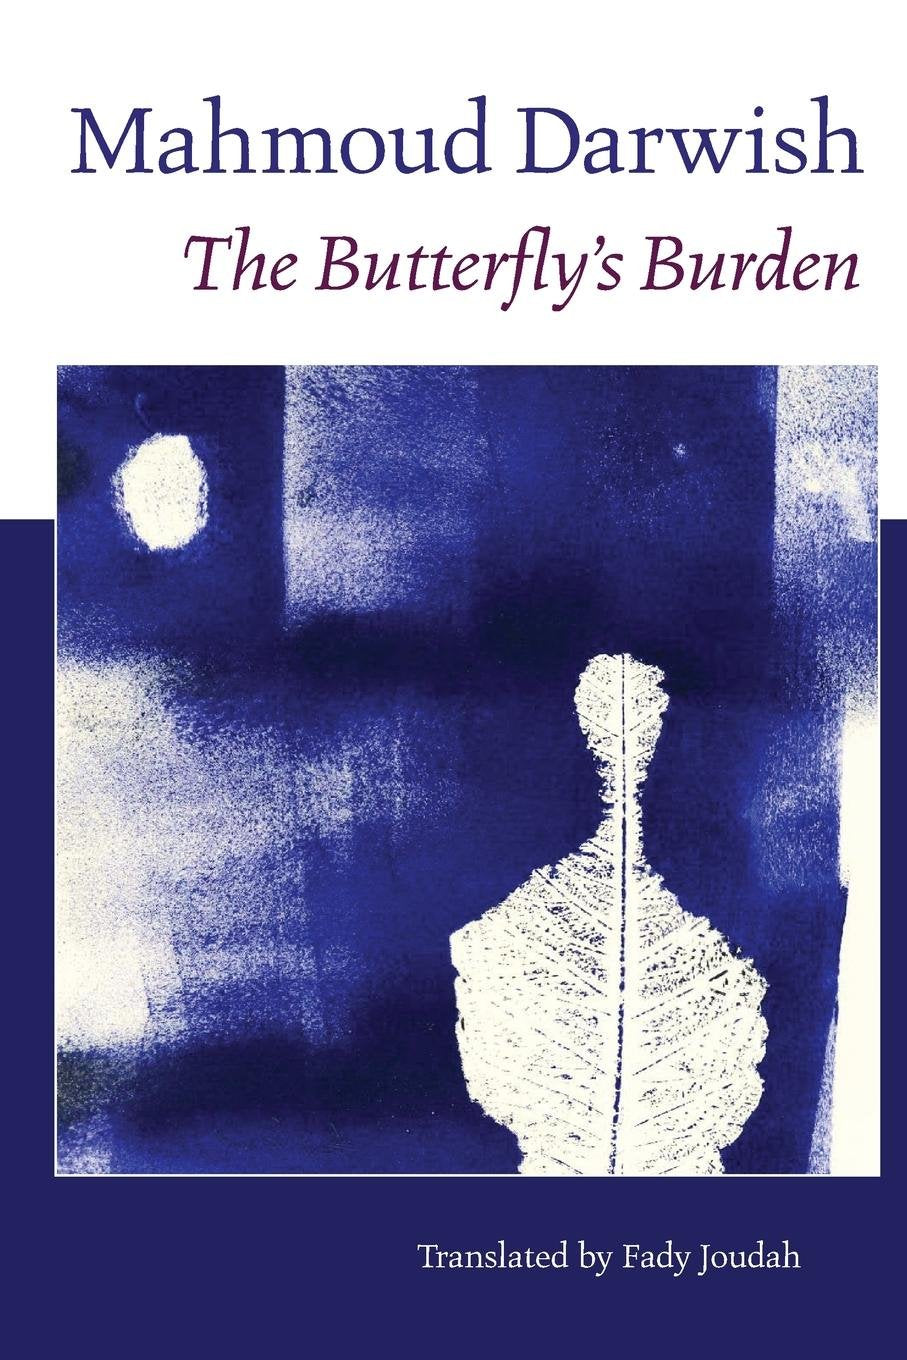 The Butterfly's Burden by Mahmoud Darwish